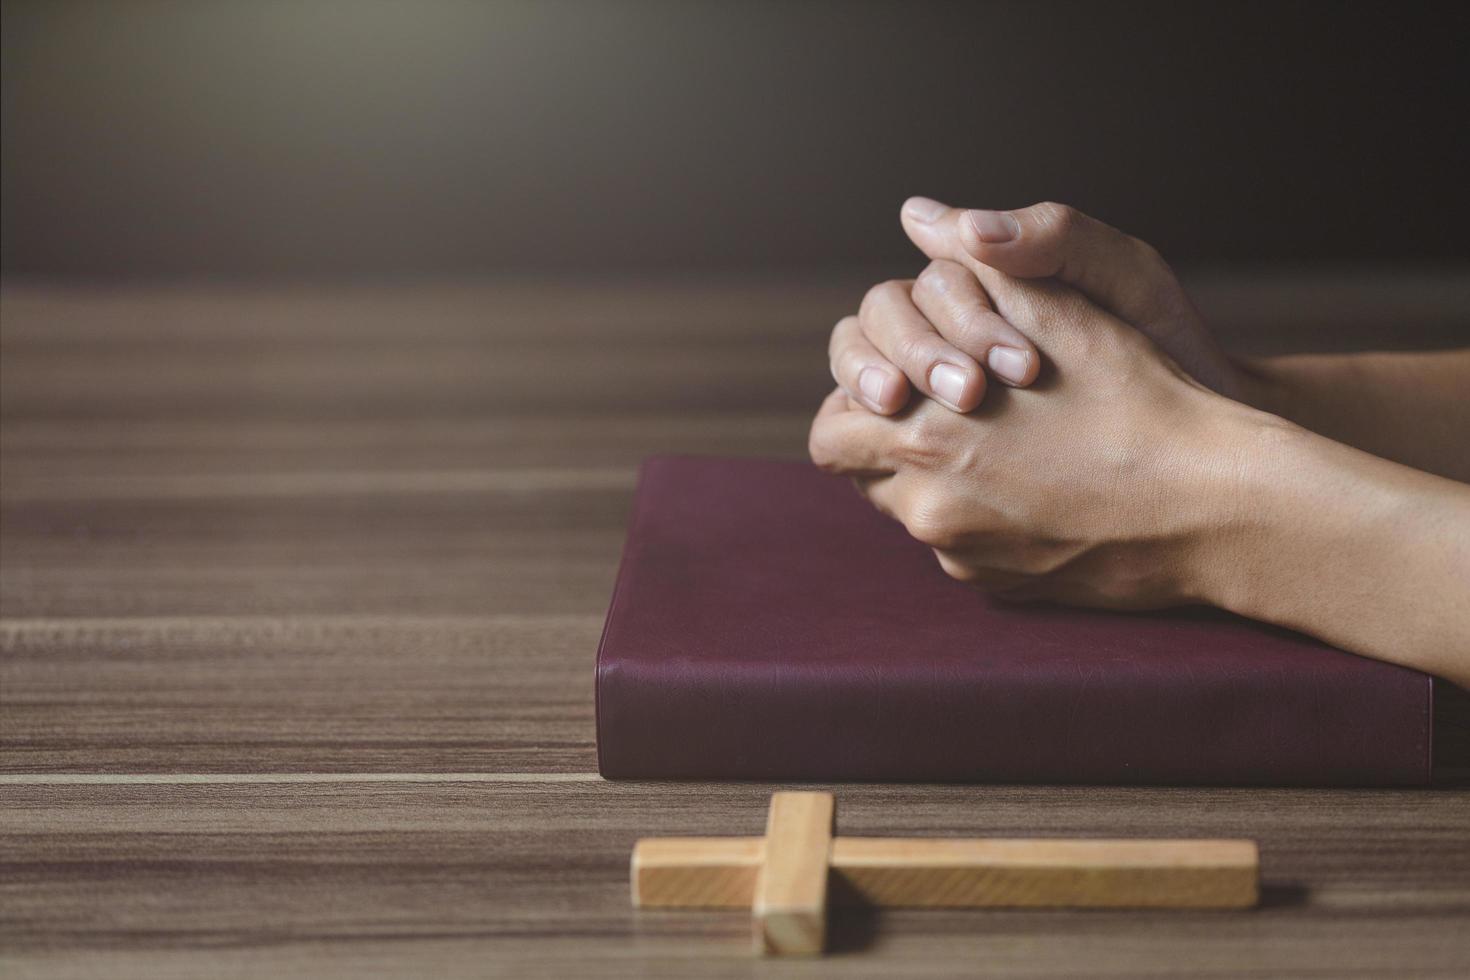 mains de femmes priant Dieu avec la bible. croire au bien. main dans la main en prière sur une table en bois. prière de crise de la vie chrétienne à dieu. photo